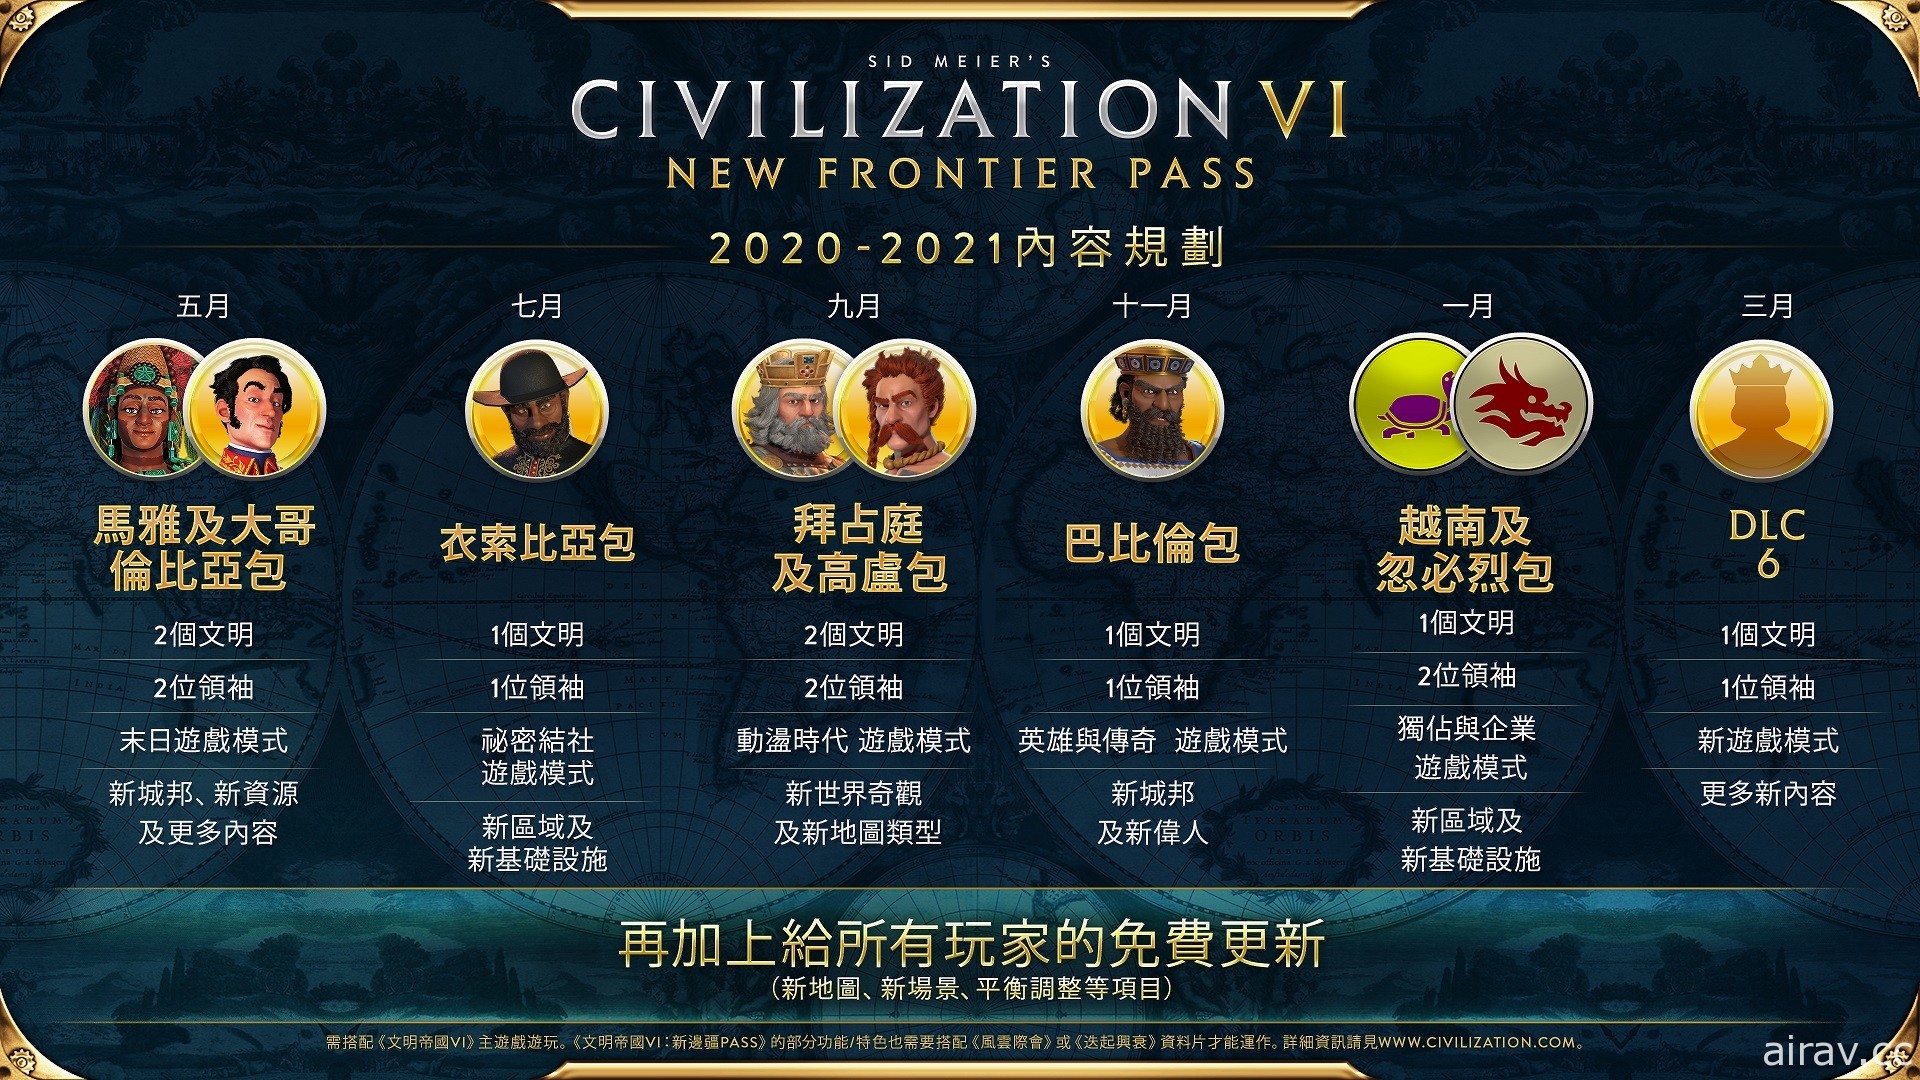 《文明帝國 6》邊疆季票第五款 DLC「越南及忽必烈包」即將推出 新內容搶先看